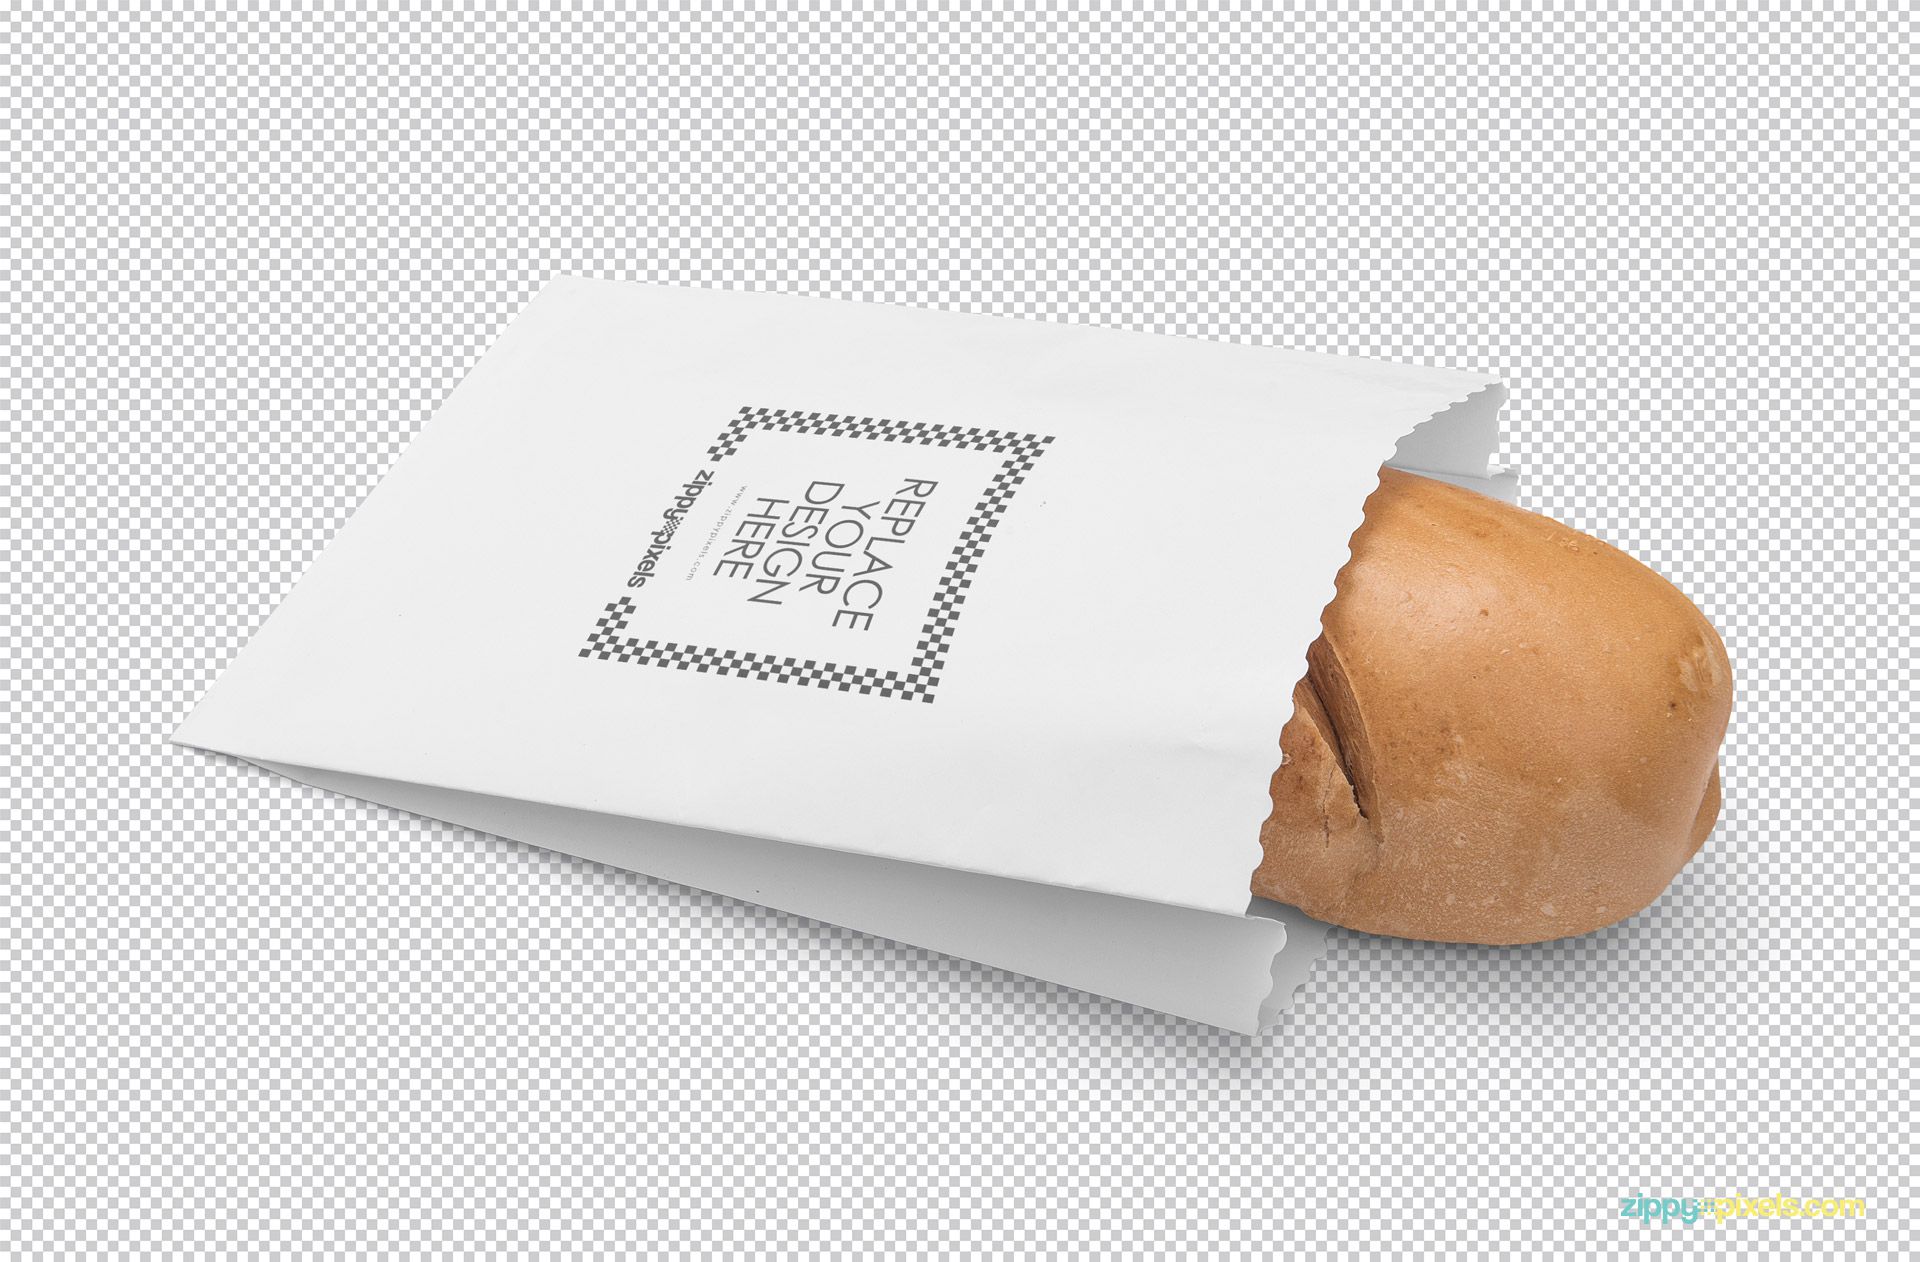 Download Mockup Embalagem de pão